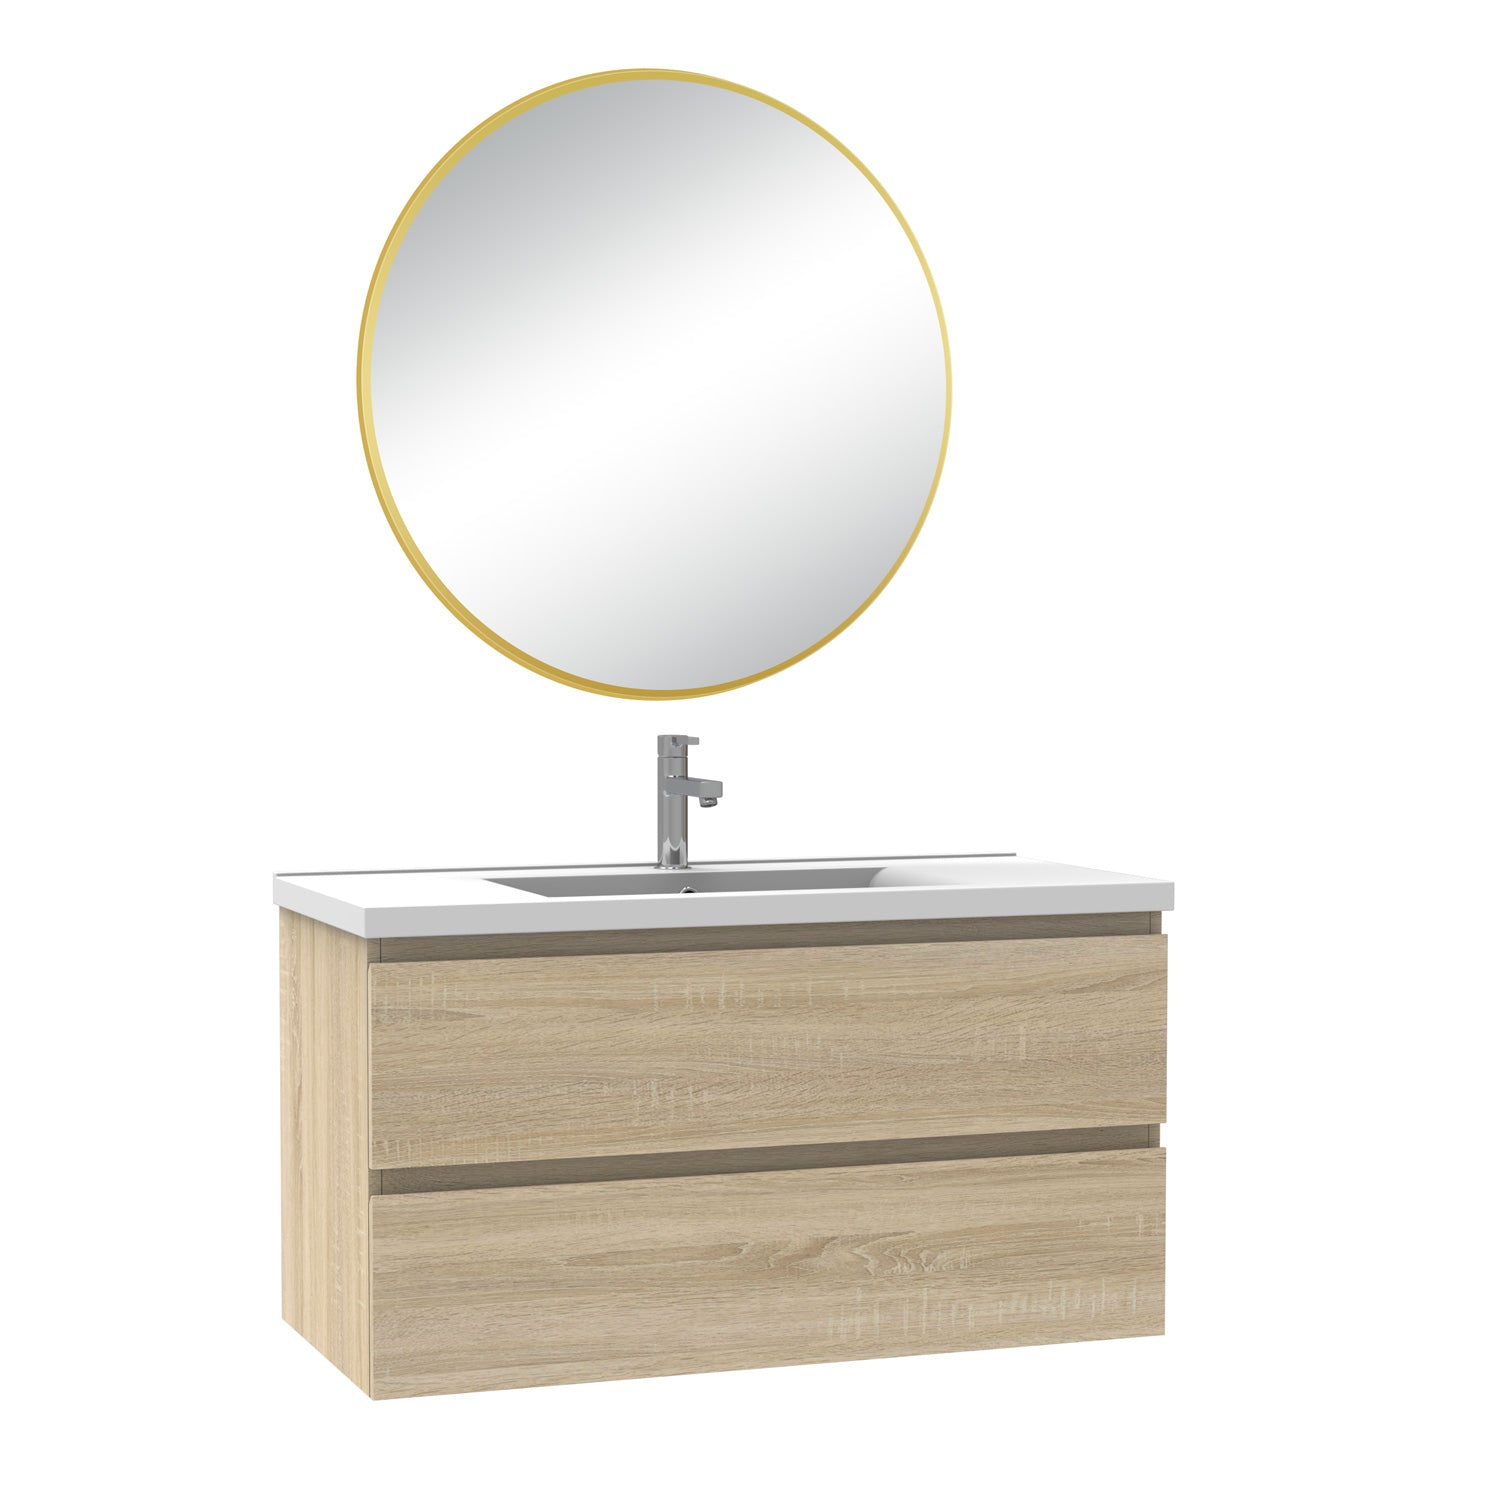 Meuble salle de bain simple vasque 100cm blanc/Anthracite/Chêne Wotan meuble acve rond miroir - Aica -Livraison gratuite